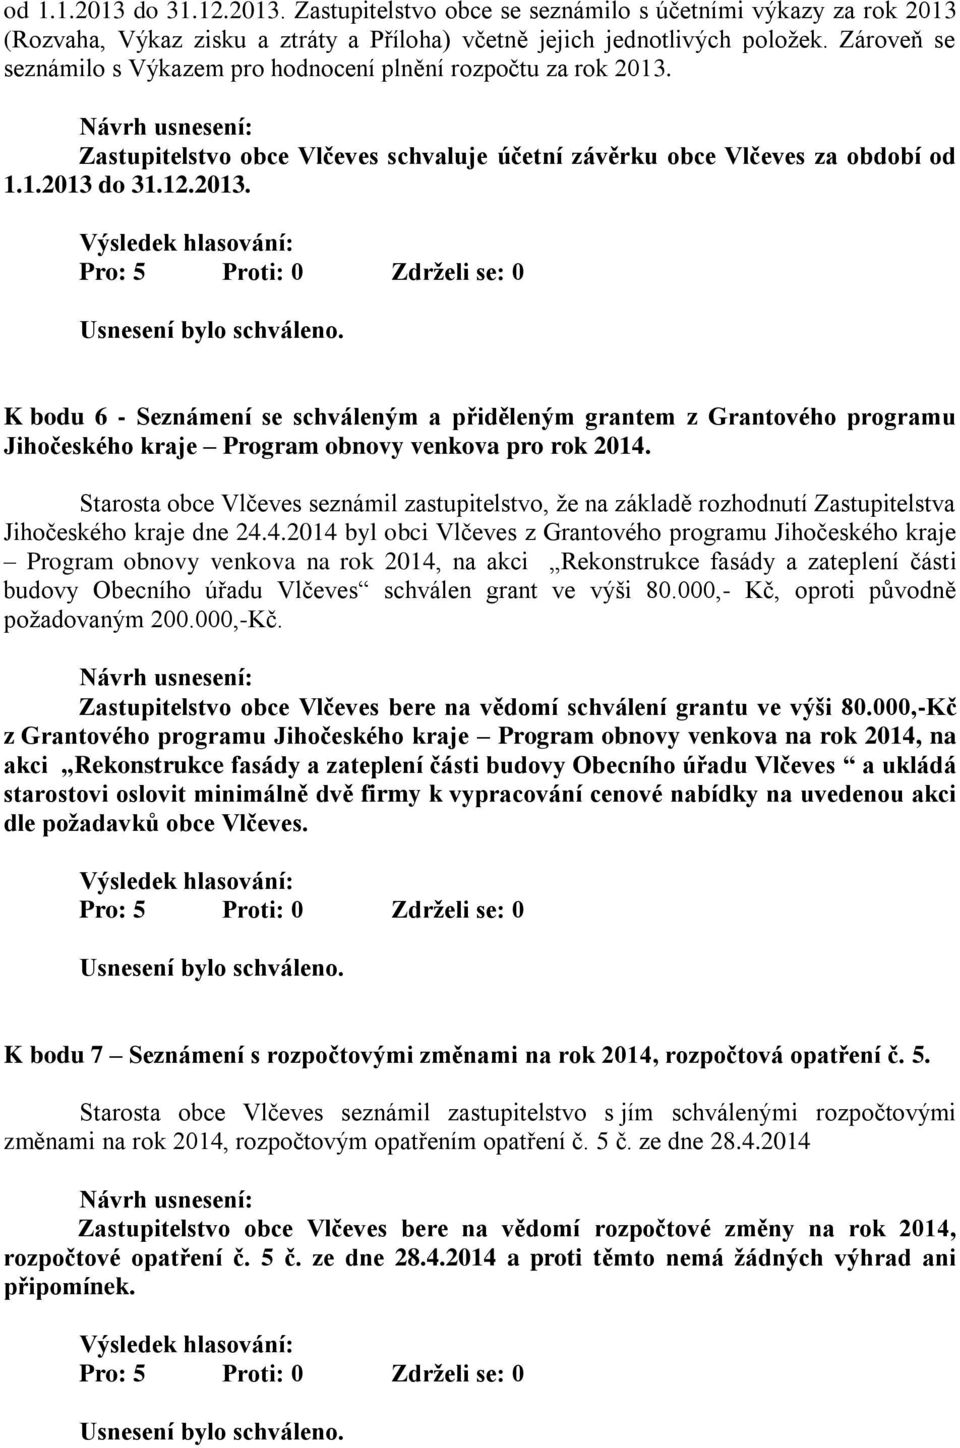 Zastupitelstvo obce Vlčeves schvaluje účetní závěrku obce Vlčeves za období od 1.1.2013 